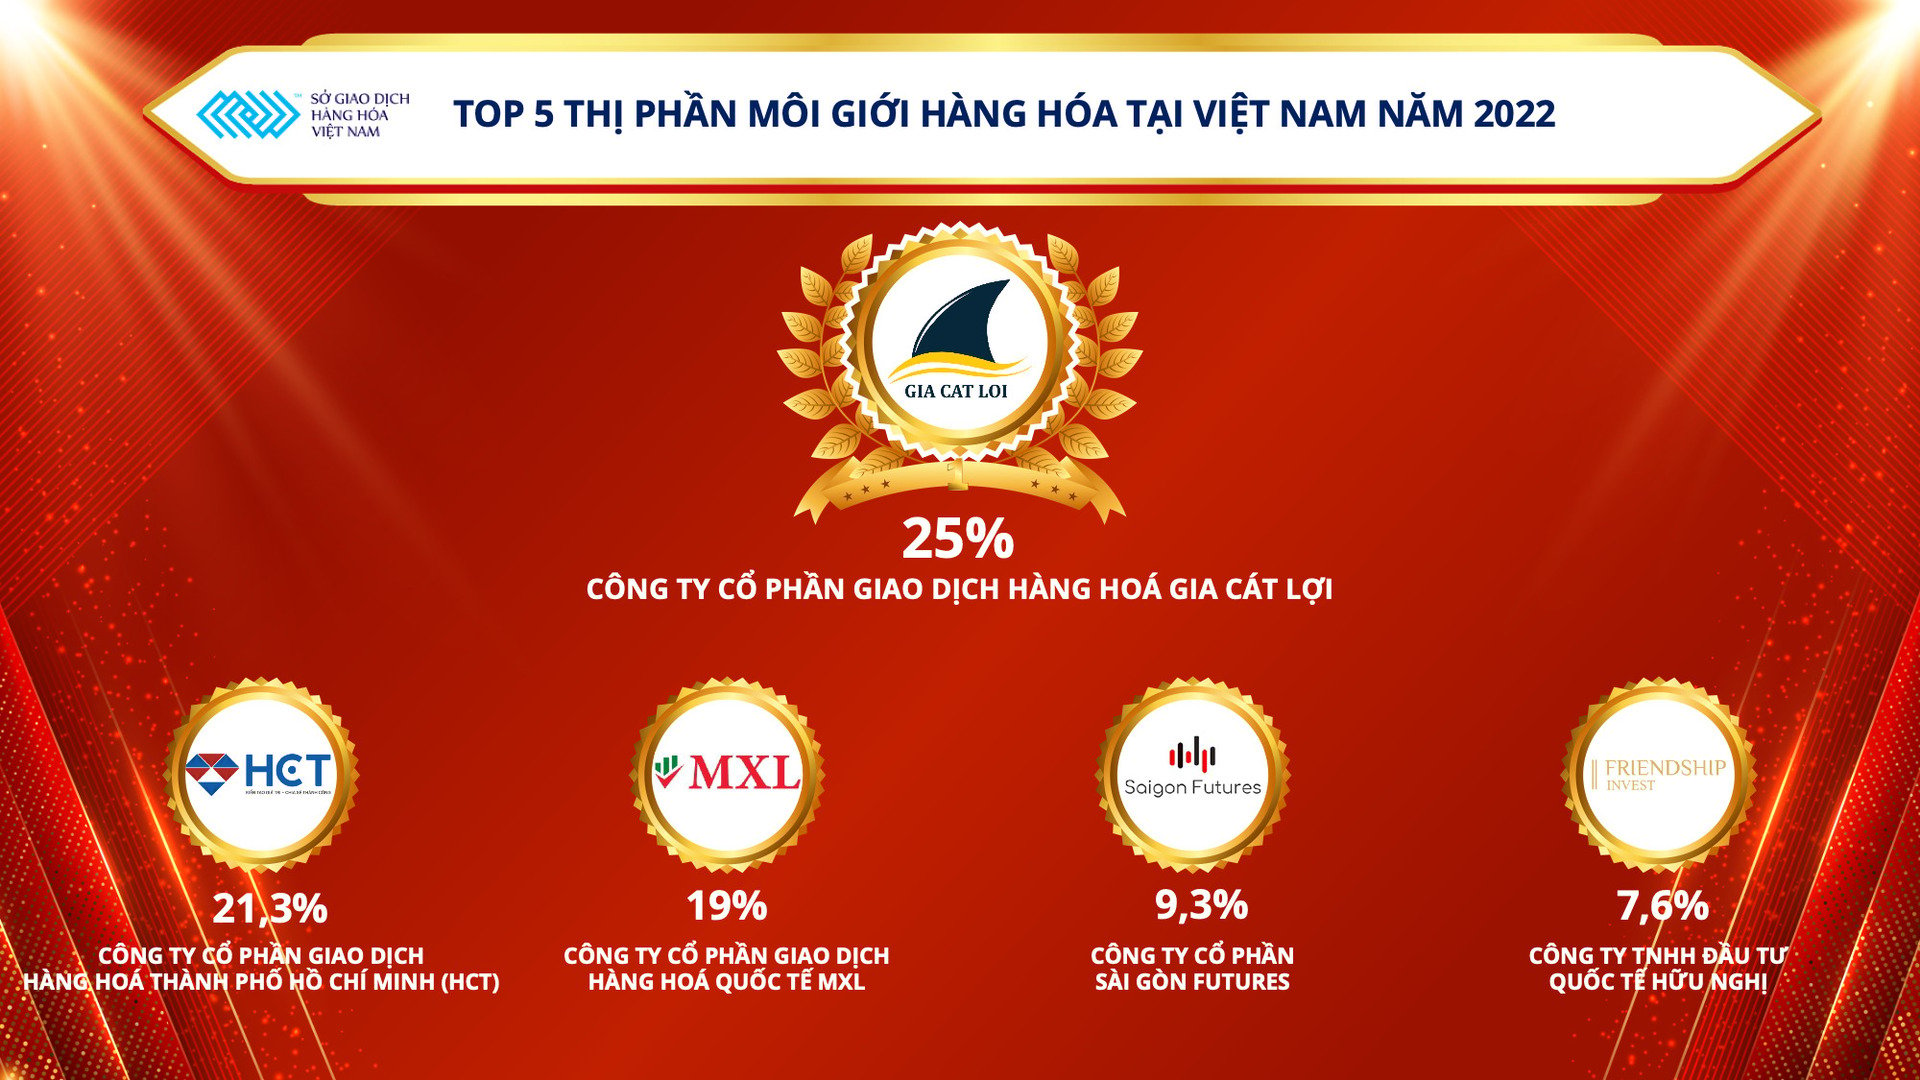 Top 5 thị phần môi giới hàng hóa tại Việt Nam